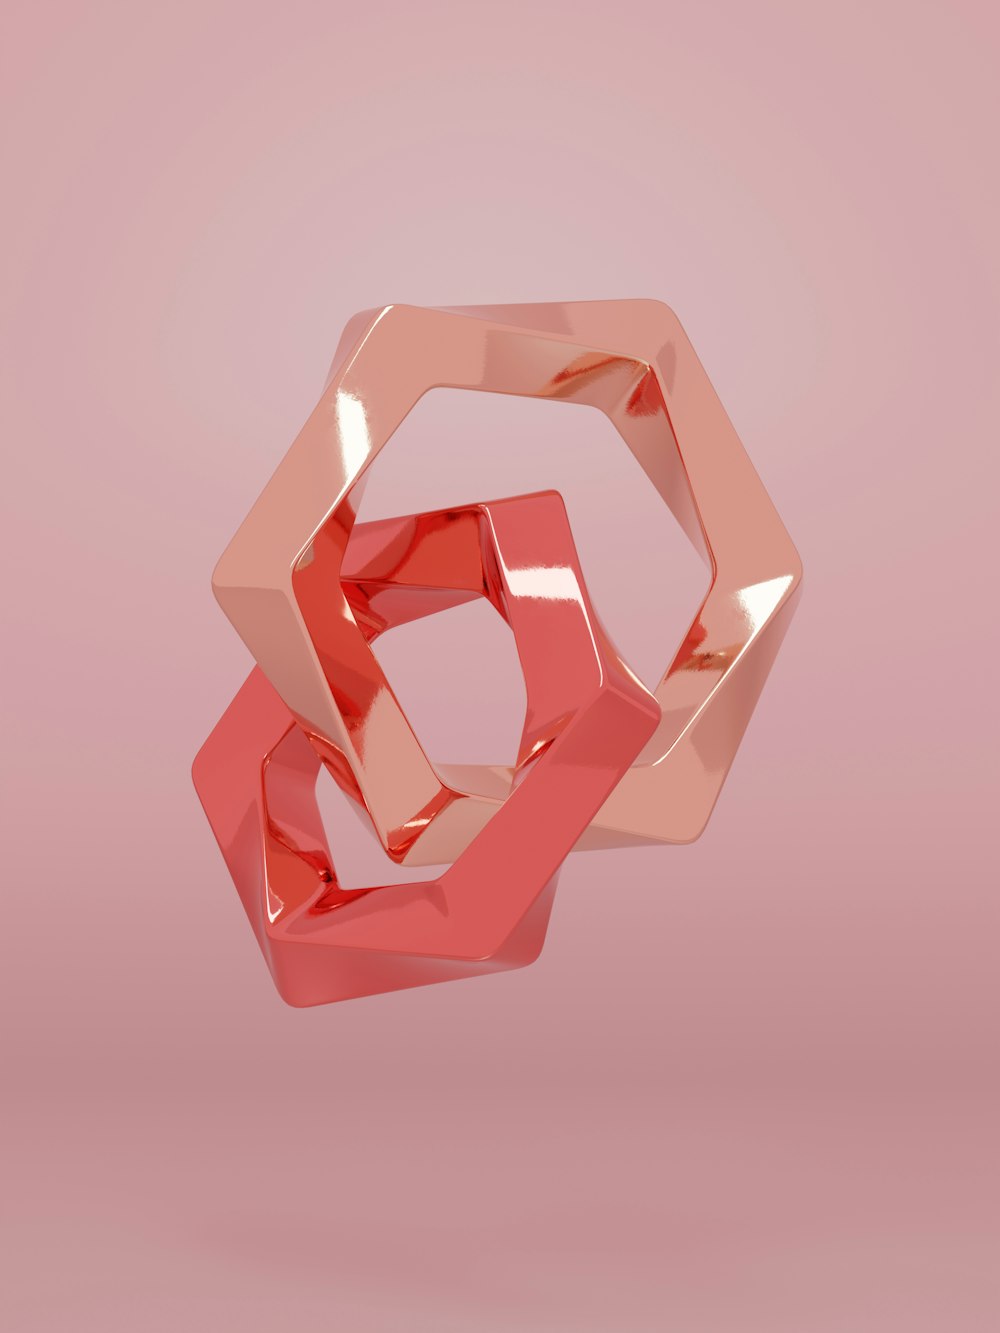 Una imagen 3D de un objeto rosa sobre un fondo rosa